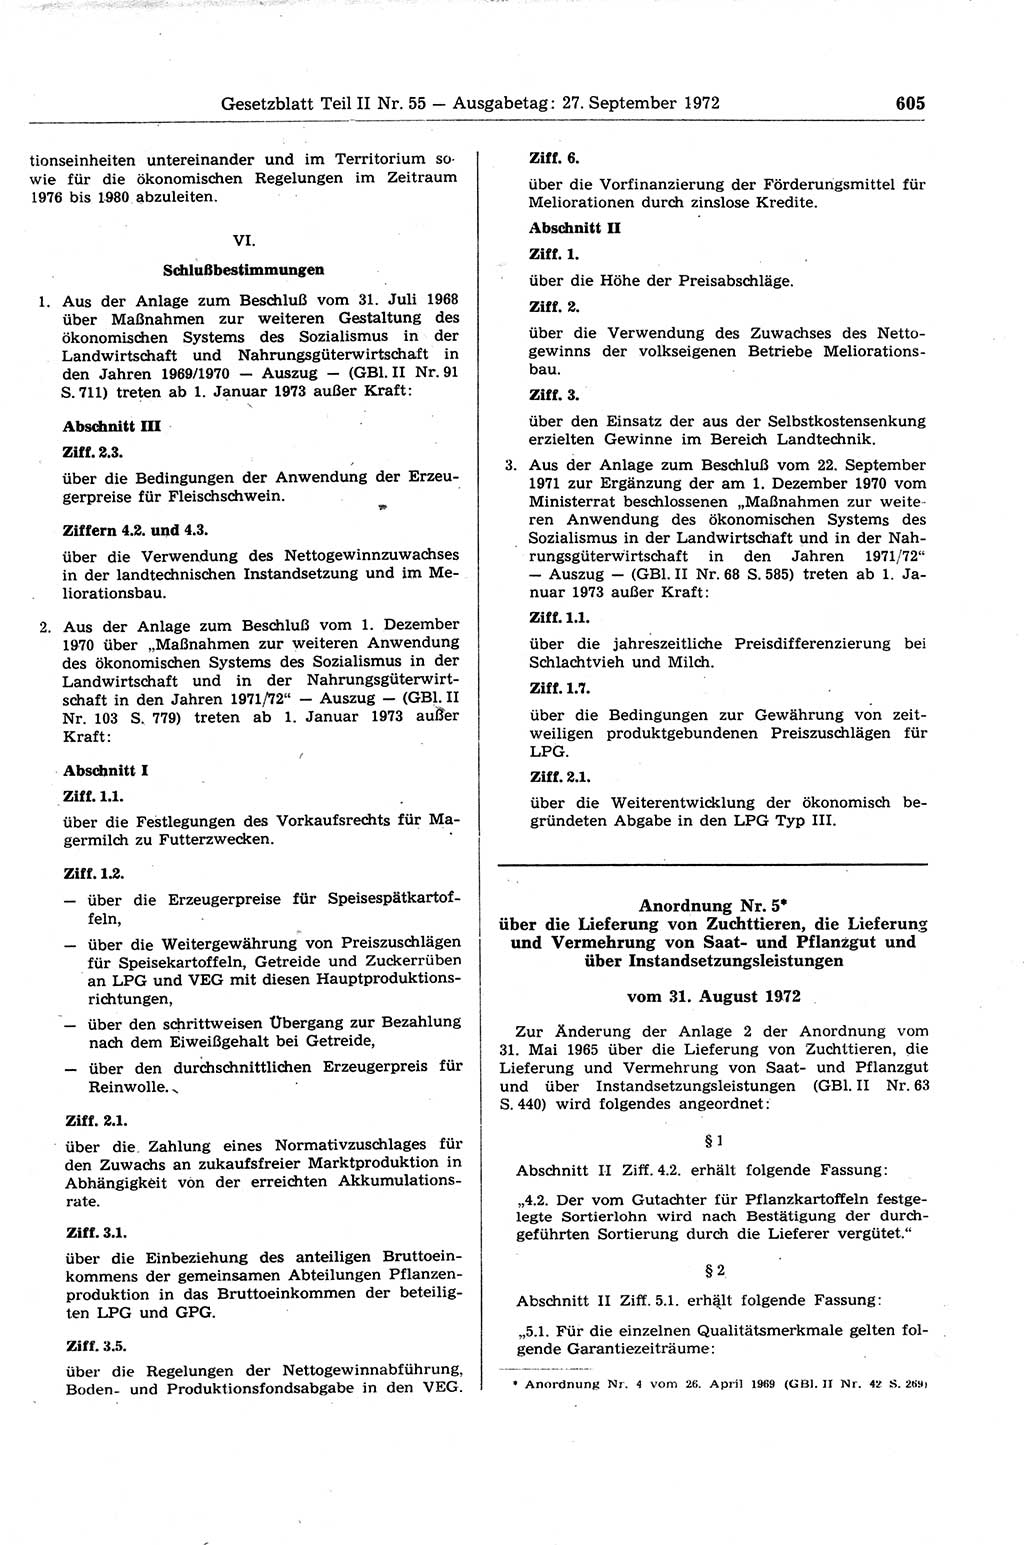 Gesetzblatt (GBl.) der Deutschen Demokratischen Republik (DDR) Teil ⅠⅠ 1972, Seite 605 (GBl. DDR ⅠⅠ 1972, S. 605)